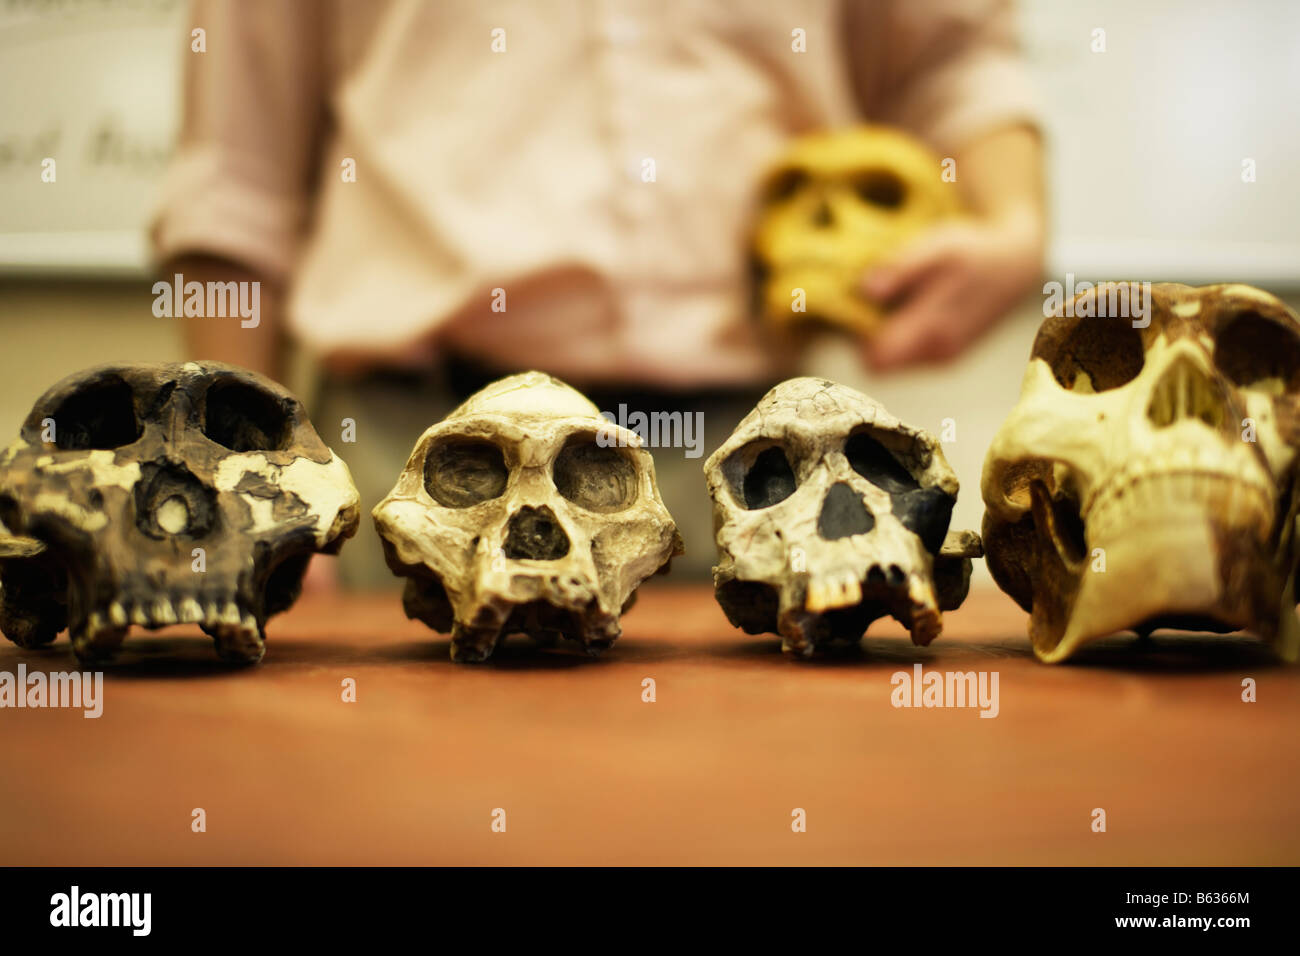 Mann, die Lehre der menschlichen Evolution mit Modell Schädel von menschlichen Vorfahren Stockfoto